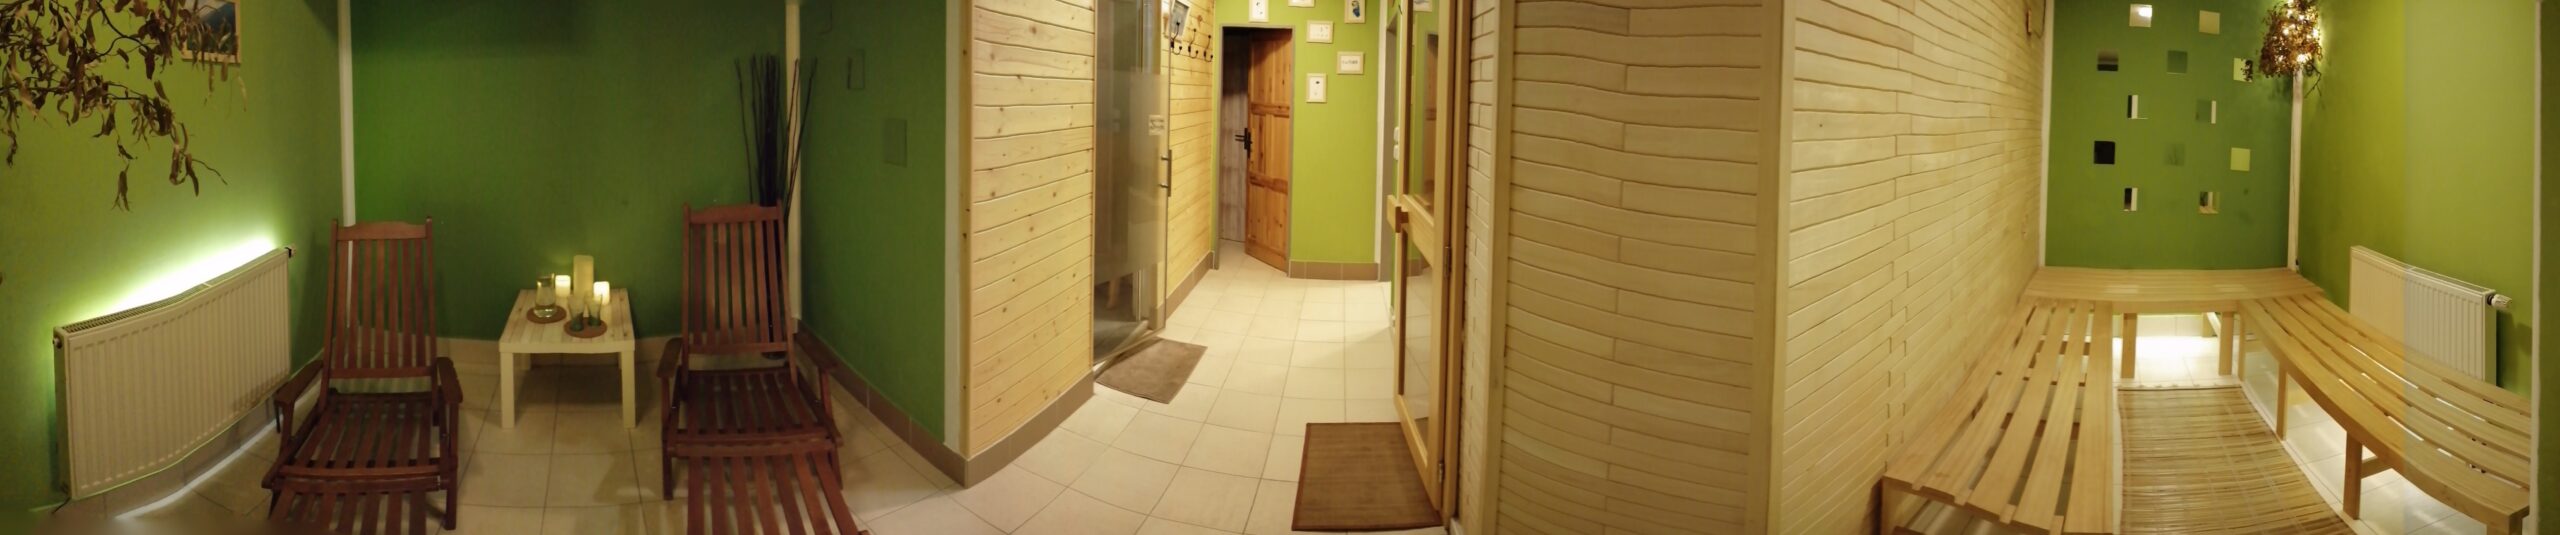 prostor pro odpočinek po sauně